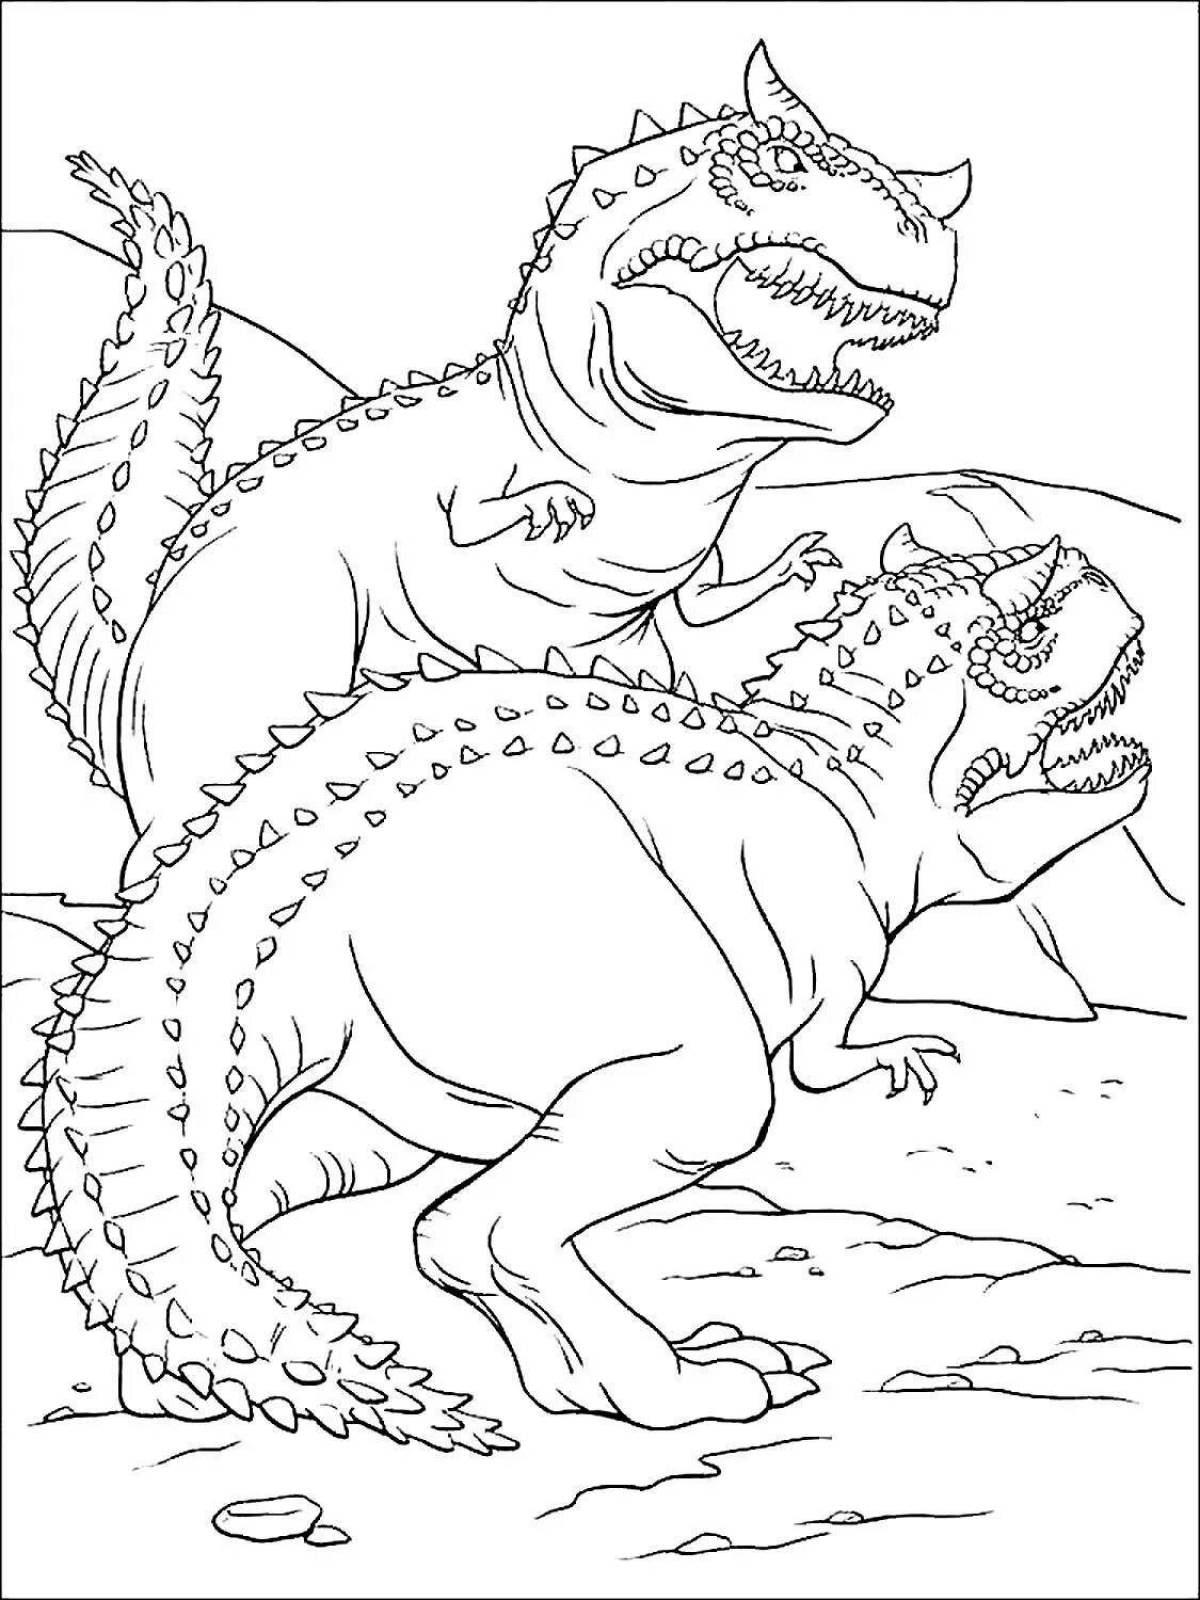 Charming tarbosaurus truck coloring book